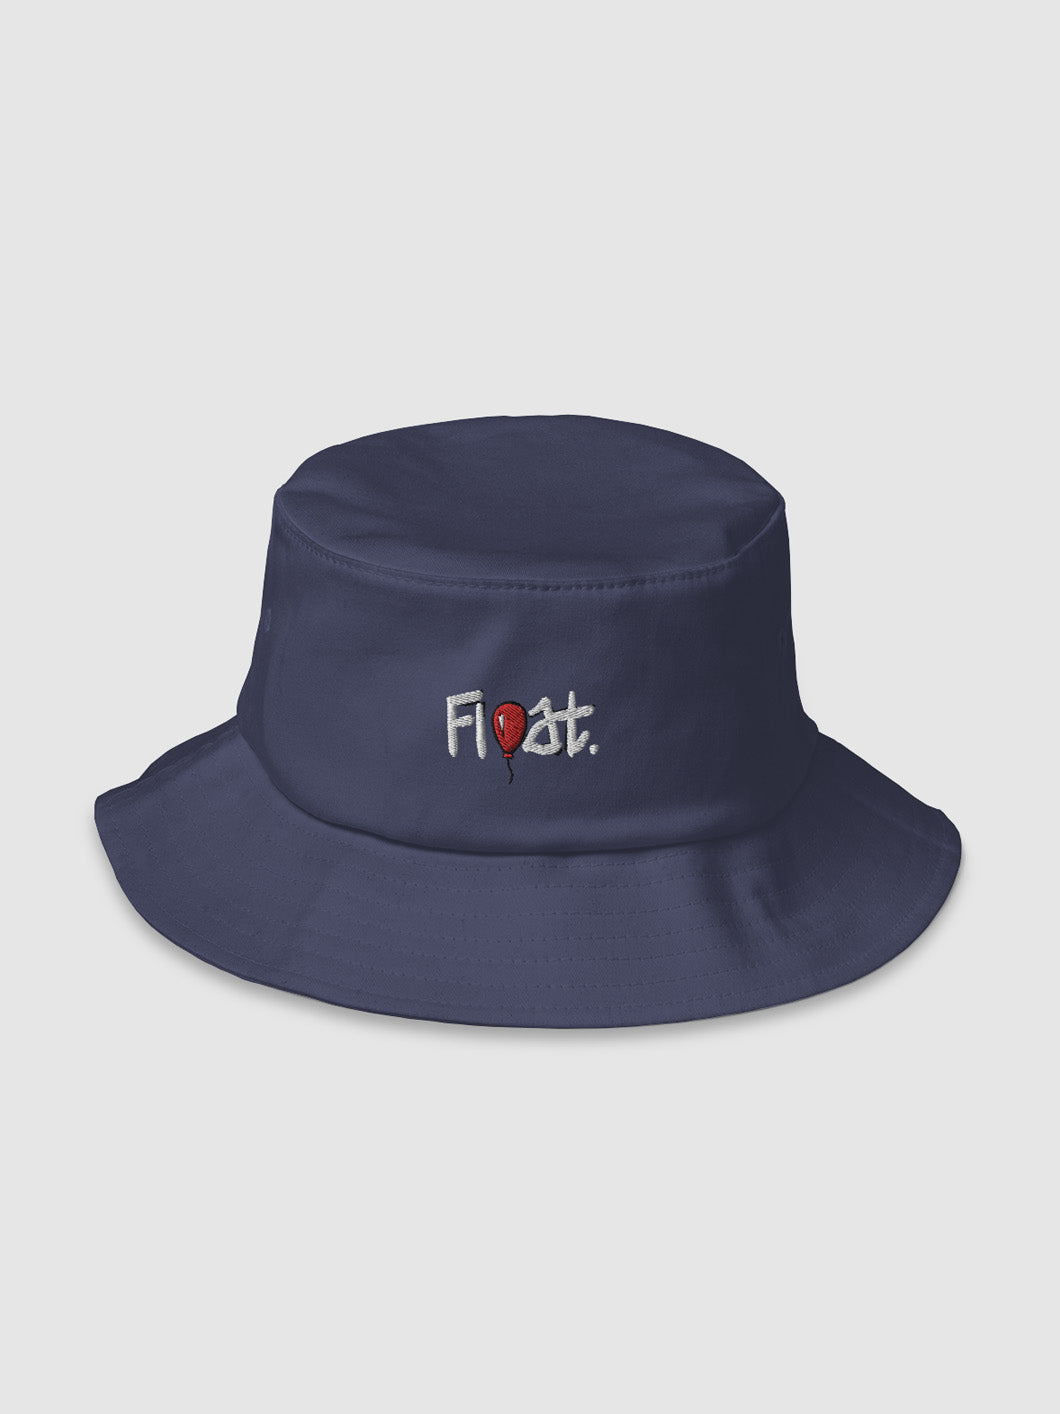 Float Old School Bucket Hat